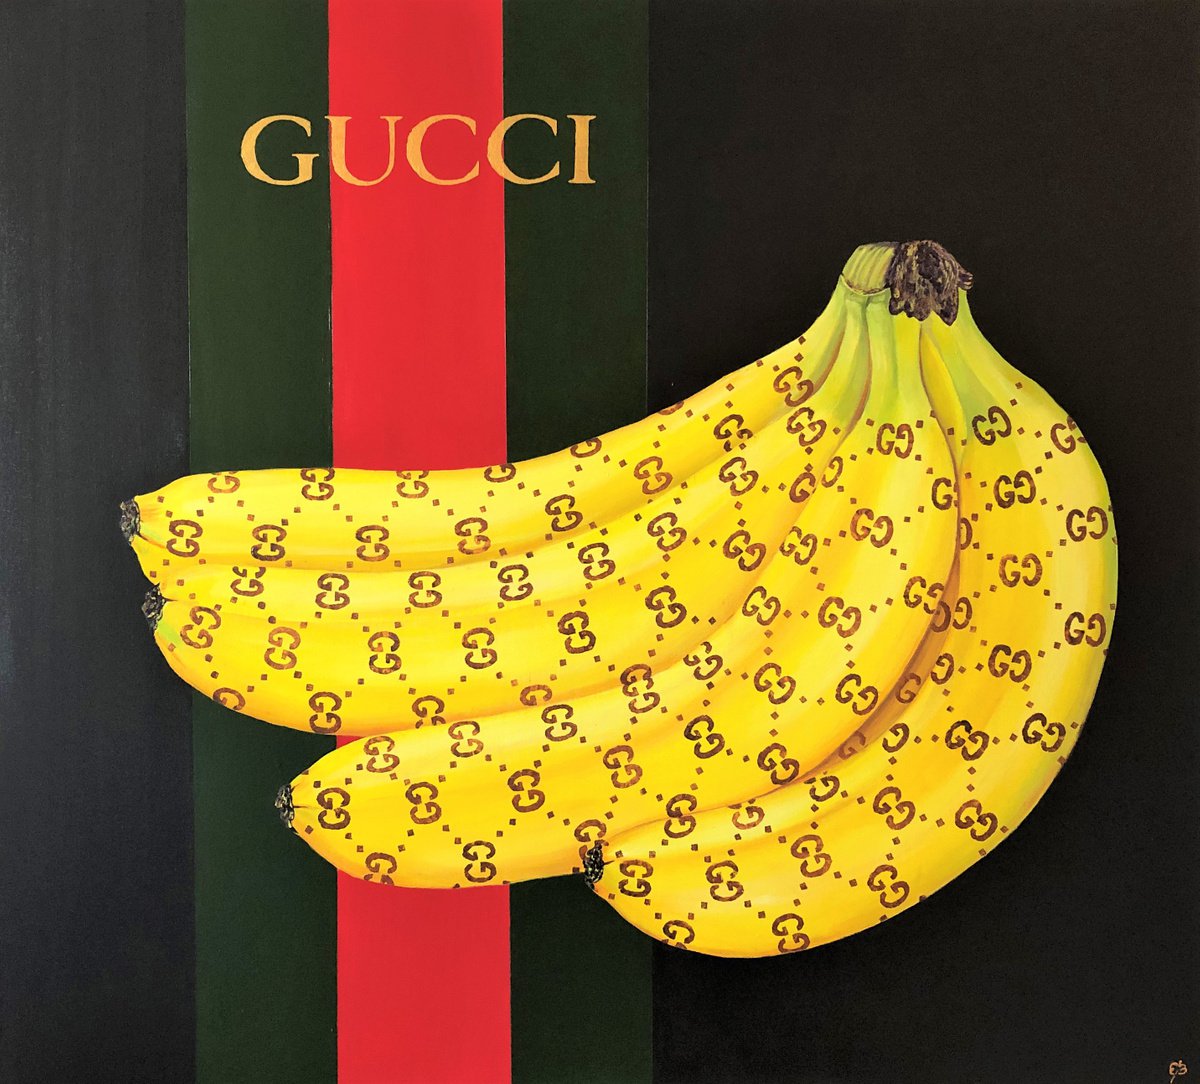 GUCCI bananas by Lena Smirnova